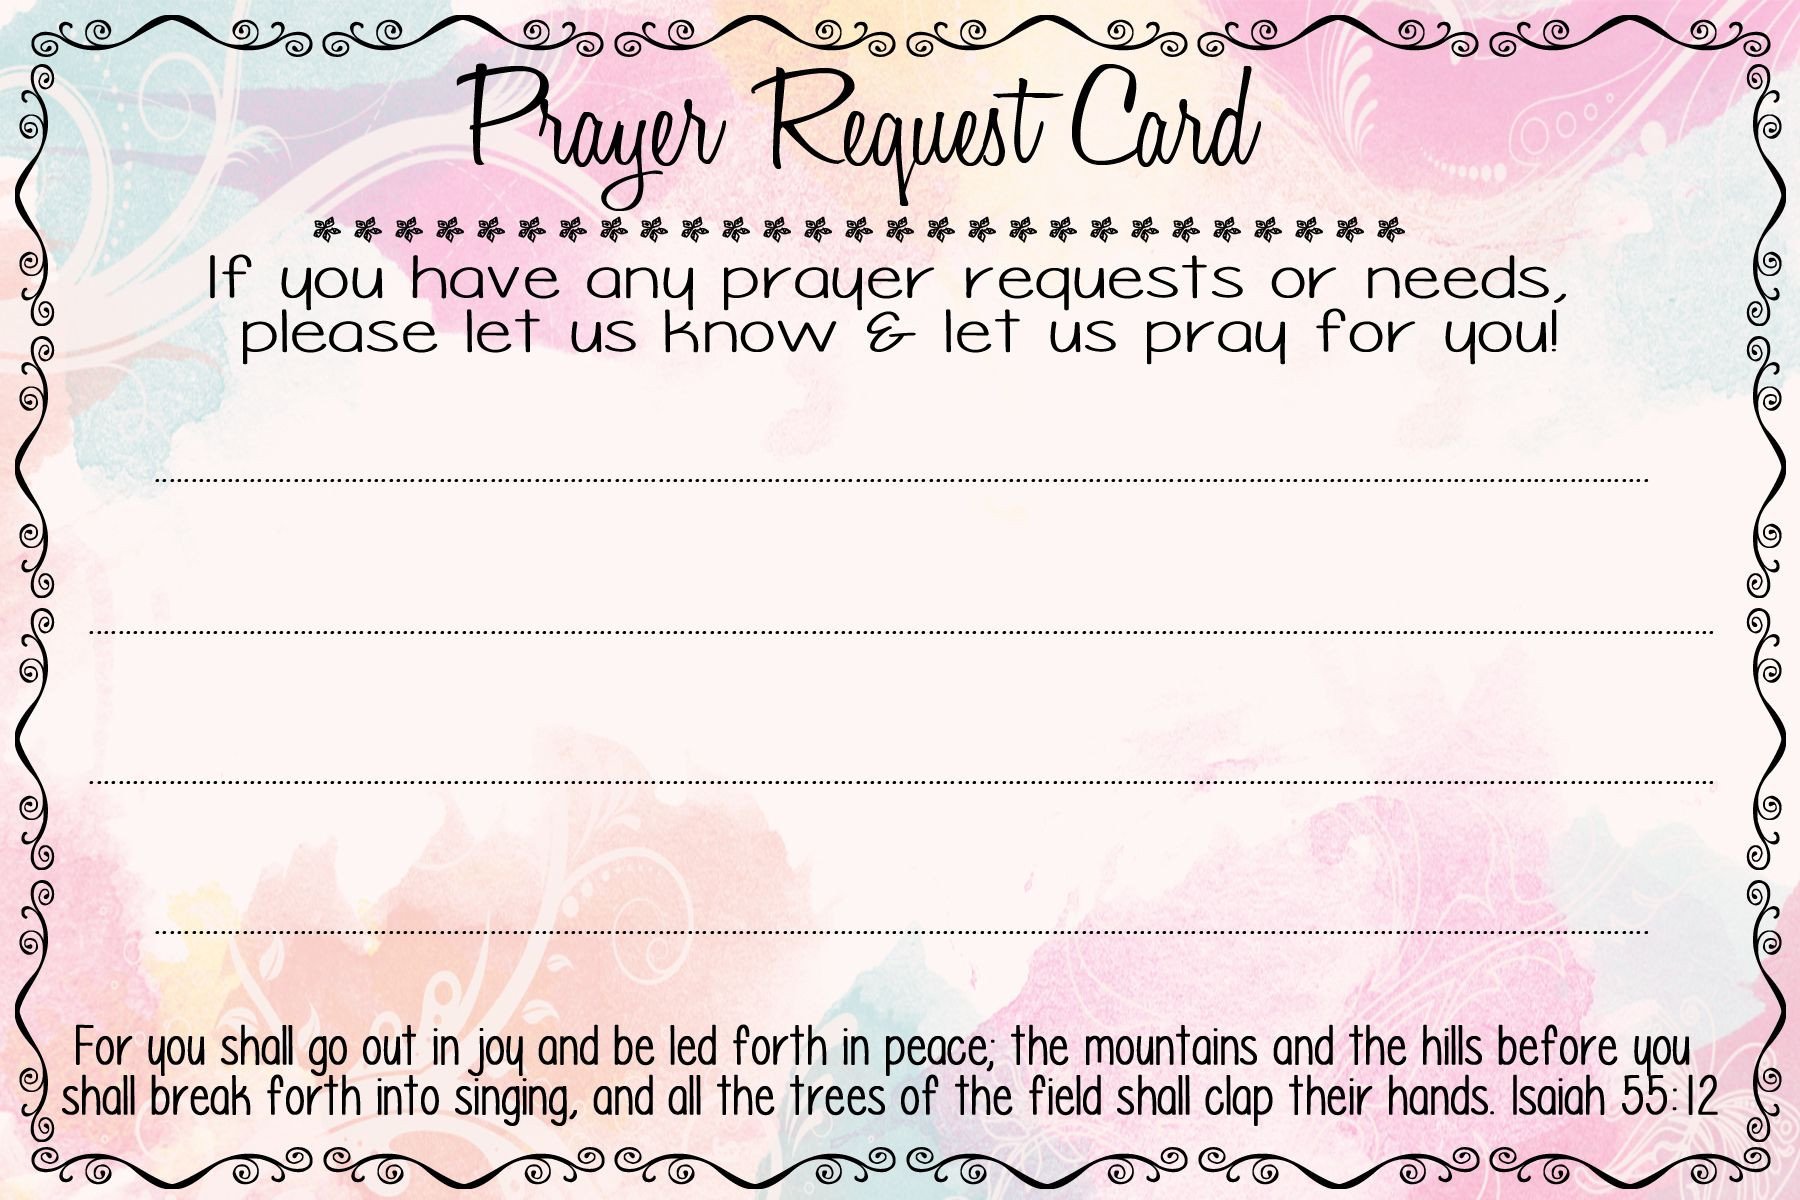 Prayer Request Cards A fierce flourishing